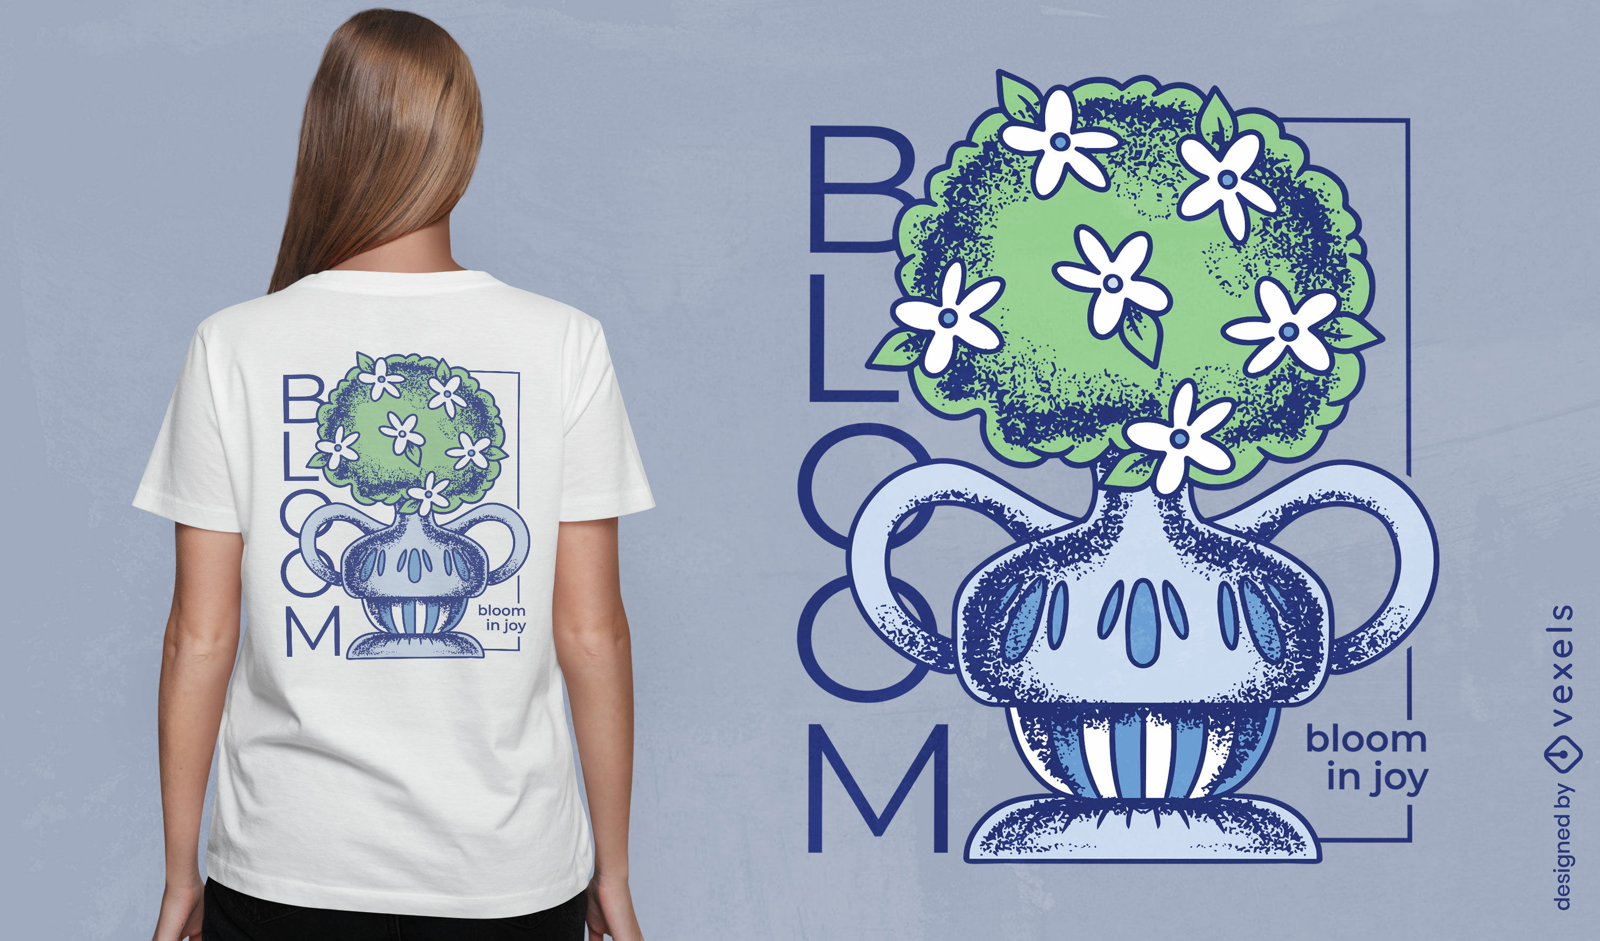 Bloom in joy plant vase t-shirt design